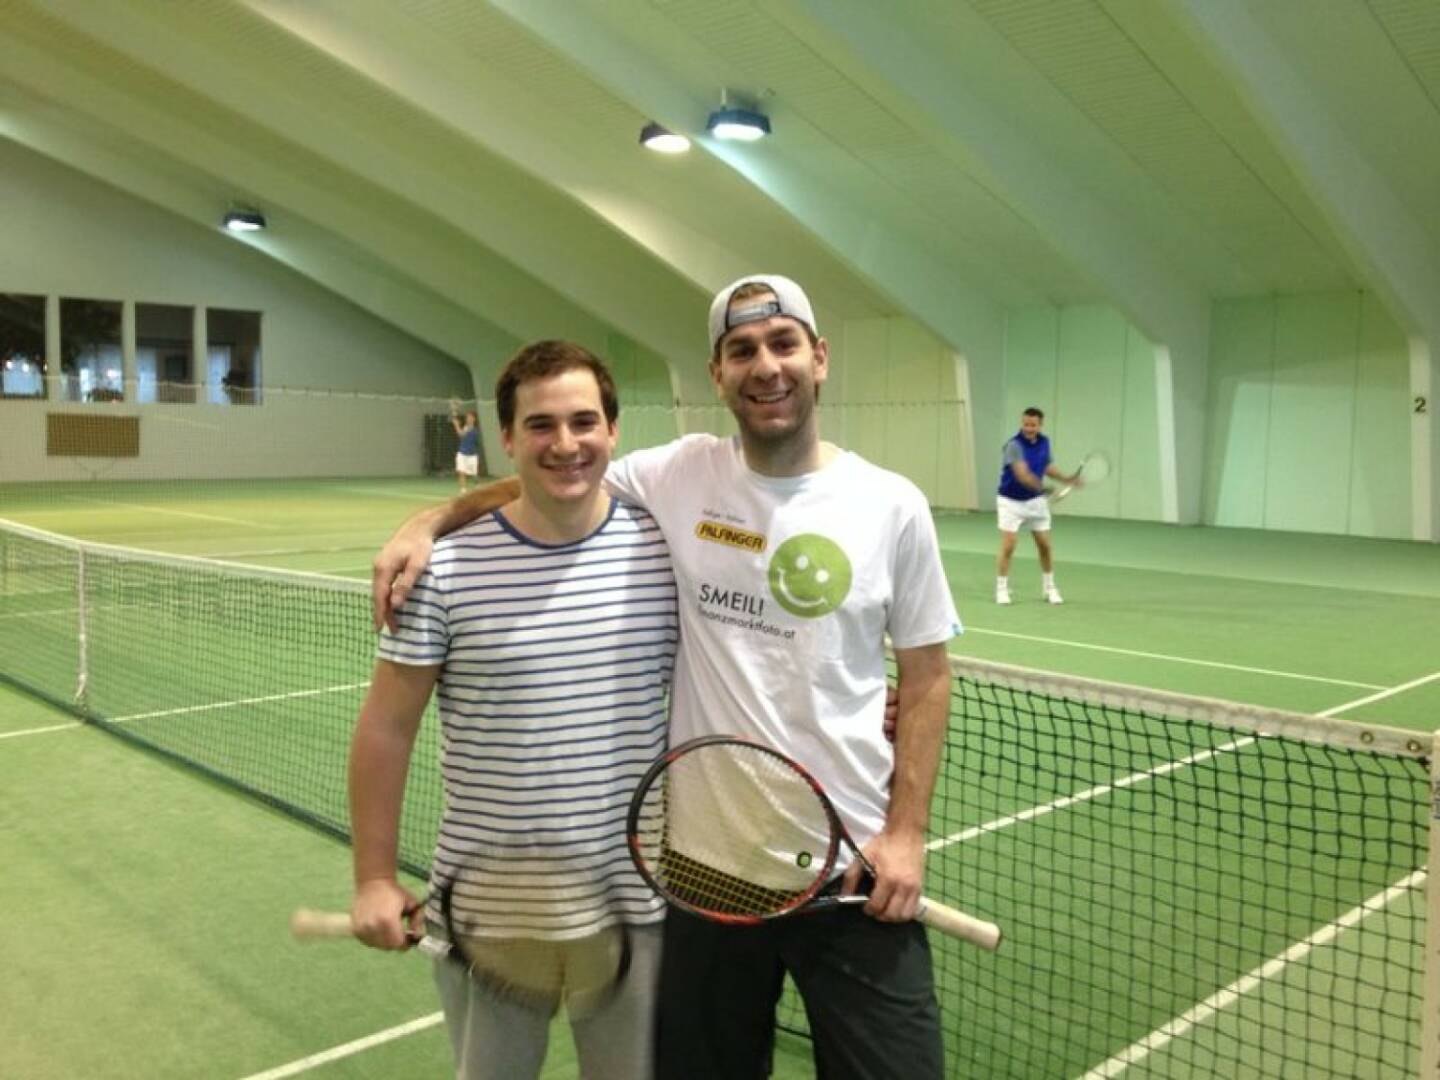 Tennis Smeil - Sportle.me-Co-Gesellschafter Florian Resch (Shirt in der Palfinger-Kollektion)